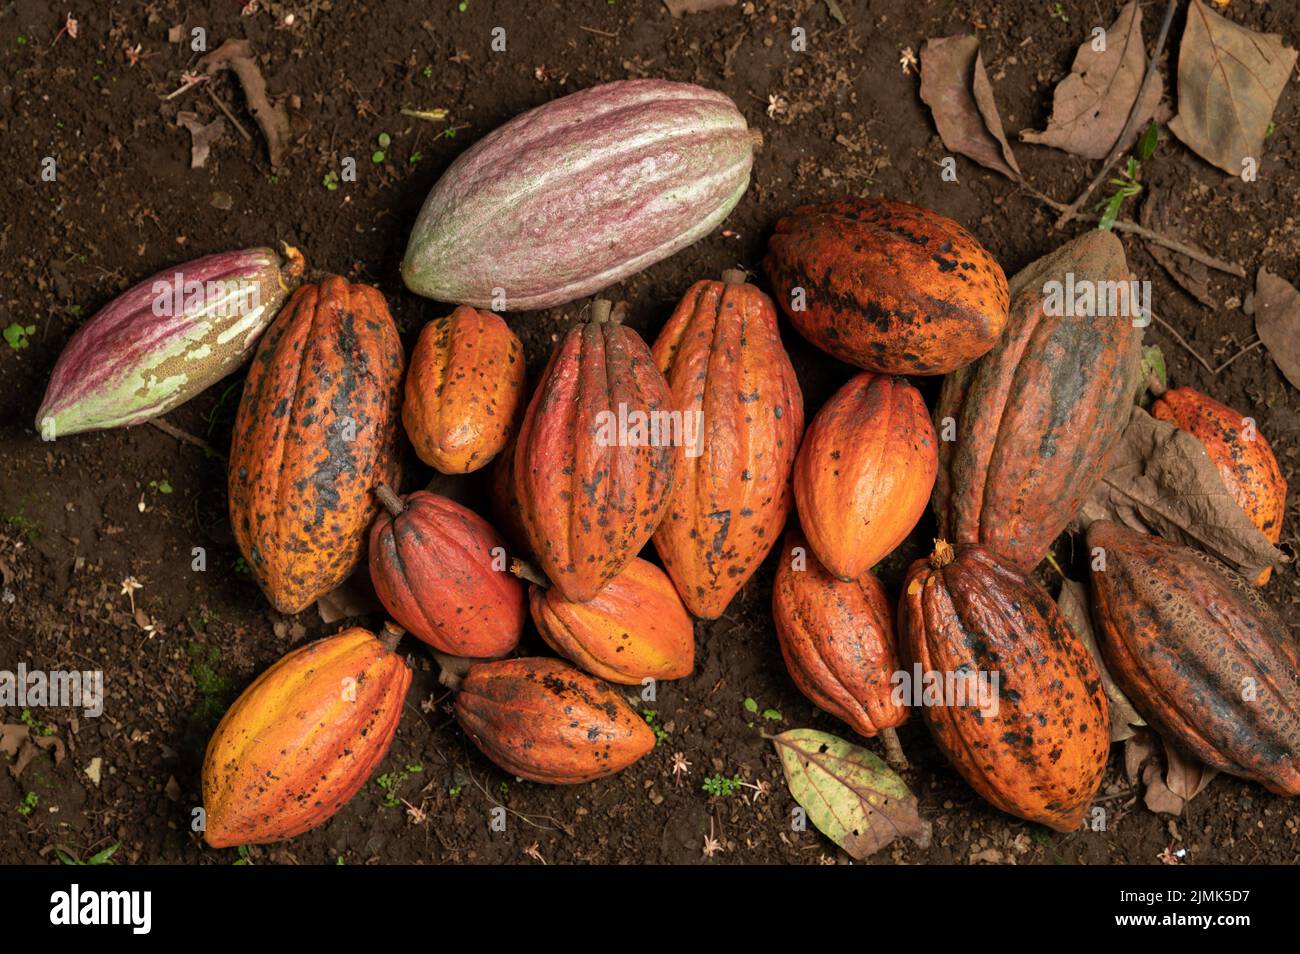 Le gousse de cacao de couleur orange repose sur le sol au-dessus de la vue Banque D'Images